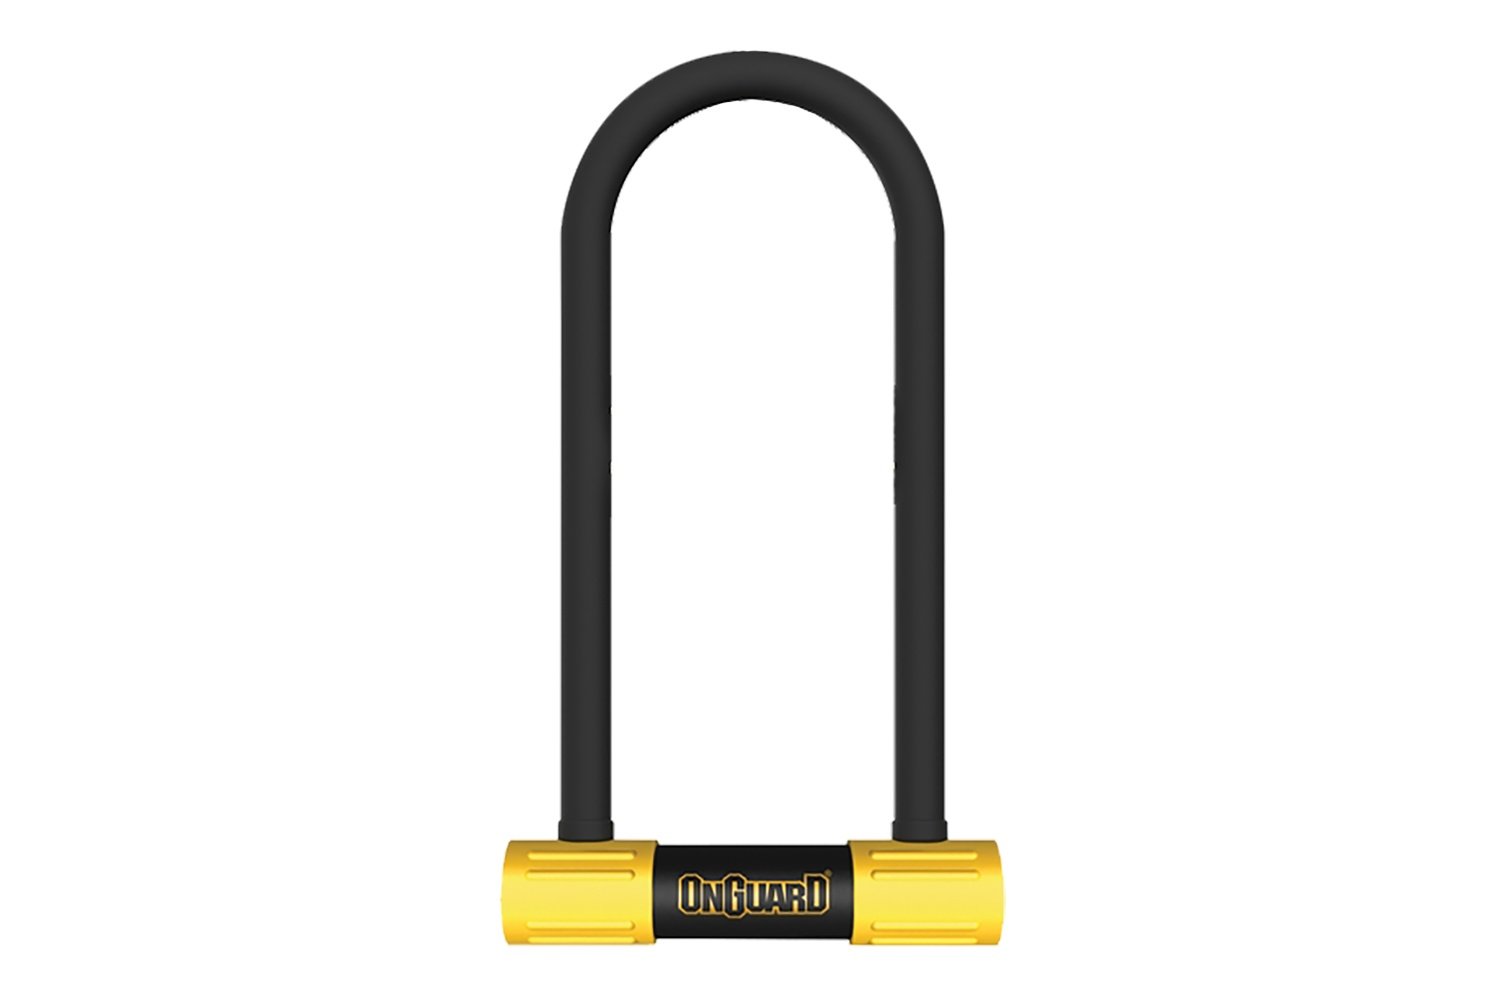 Велосипедный замок Onguard Smart Alarm, U-lock, на ключ, 100 x 258мм, 8268 велосипедный замок onguard bulldog atb u lock на ключ 127 x 230мм толщина 13мм 8011